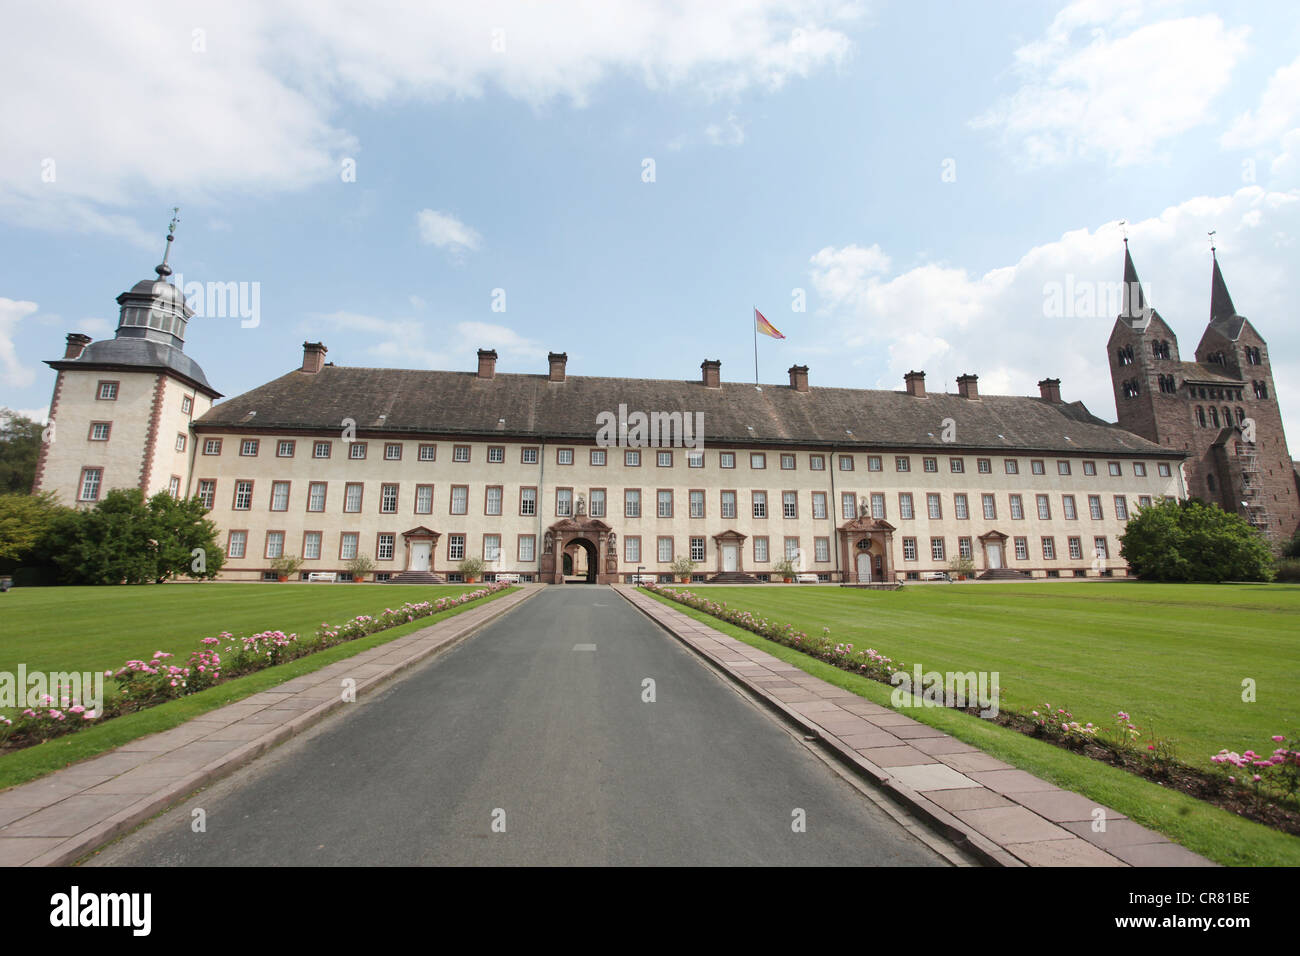 Le château Schloss Corvey, ancienne abbaye, Hoexter, Suède, la région Rhénanie du Nord-Westphalie, Allemagne, Europe Banque D'Images